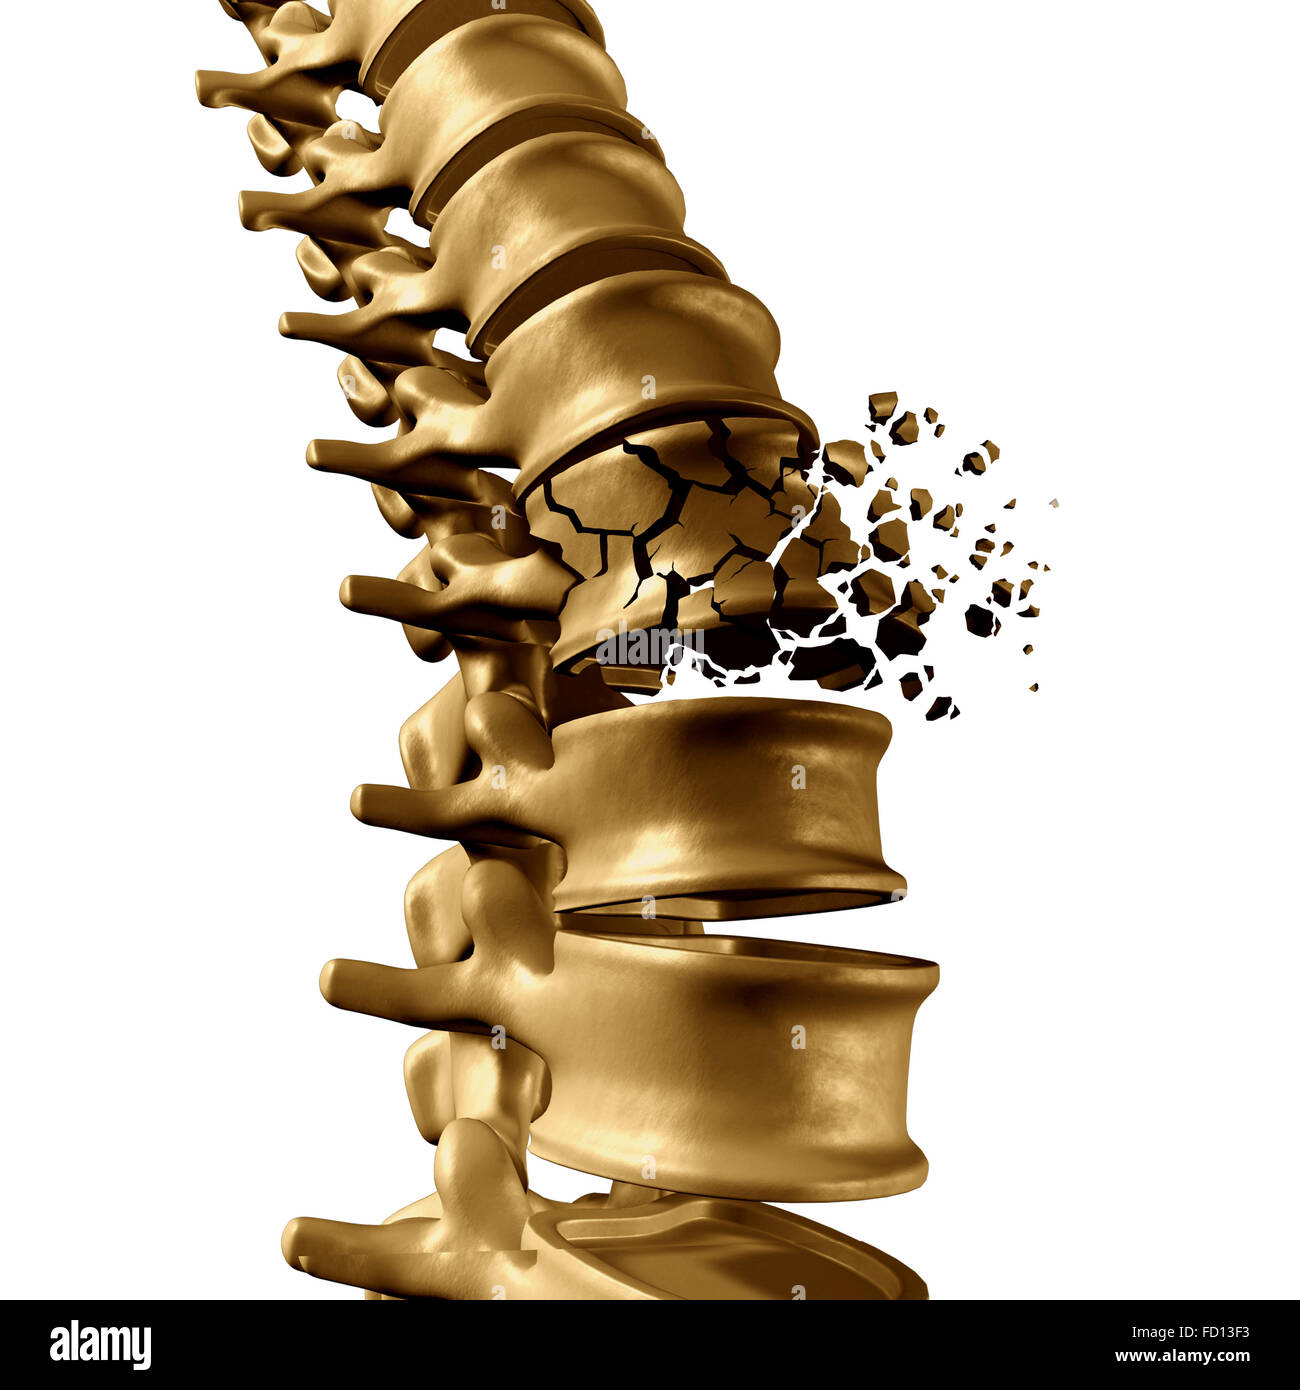 Spinaler Bruch und traumatischen Verletzungen der Wirbelsäule medizinisches Konzept als eine menschliche Anatomie Wirbelsäule mit einer gebrochenen platzen Wirbel durch Kompression oder anderen Osteoporose zurück Krankheit auf einem weißen Hintergrund. Stockfoto